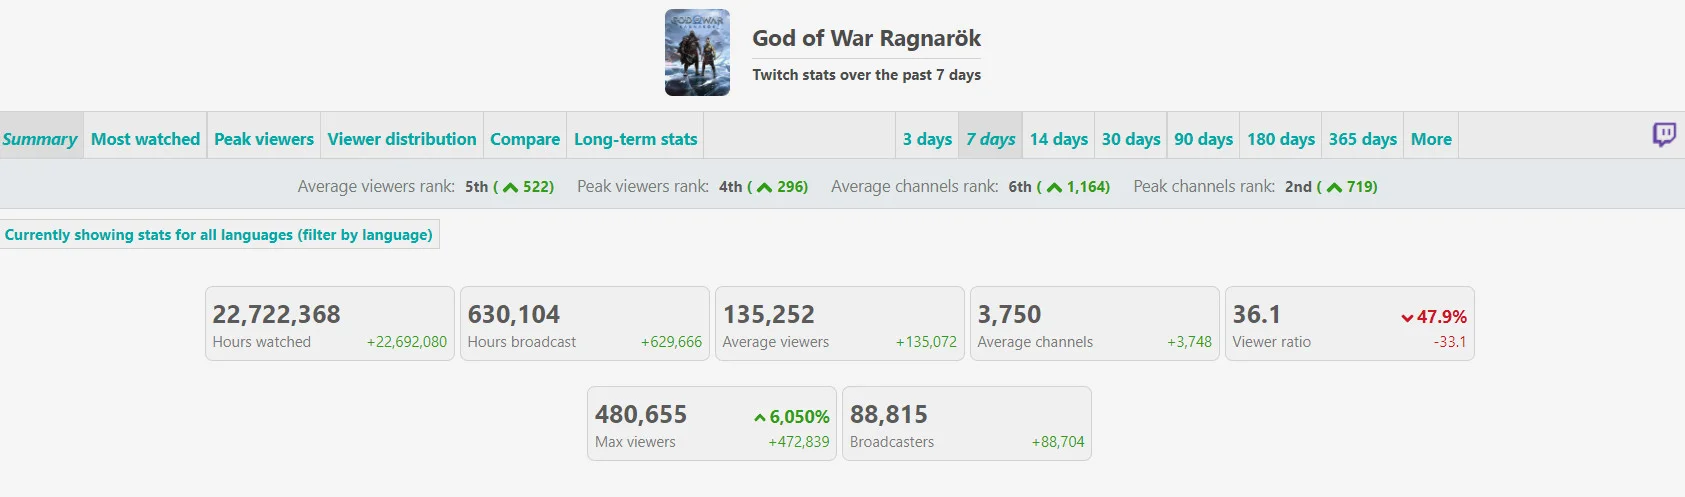 God of War: Ragnarok добилась успеха на Twitch, но уступила Elden Ring и Cyberpunk 2077 - фото 1